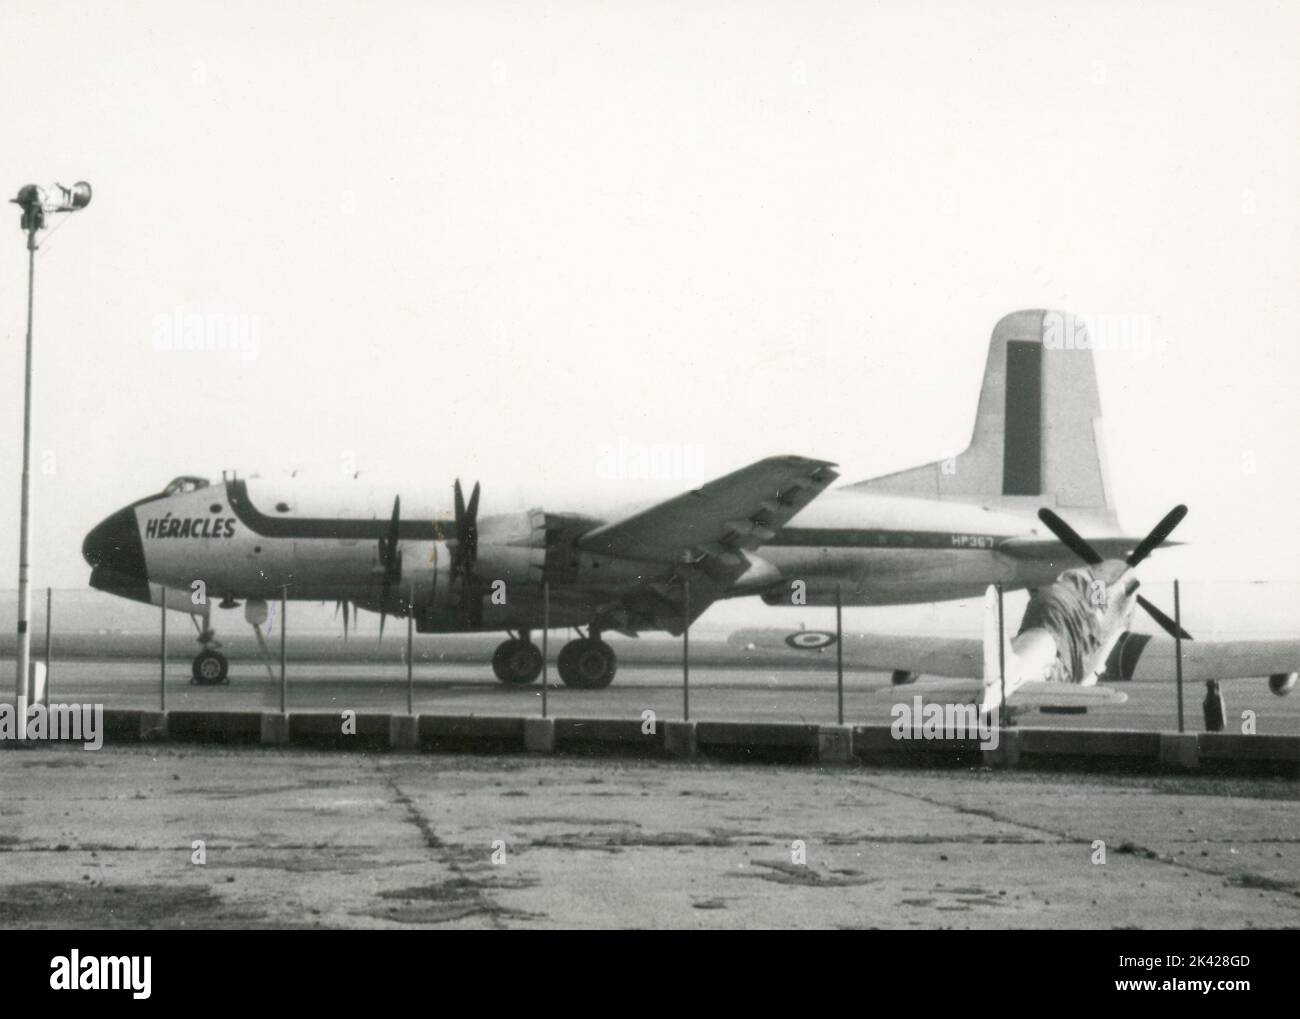 Aereo da trasporto pesante Douglas C-74 Globemaster Heracles, Aeroporto di caselle, Torino, Italia 1963 Foto Stock